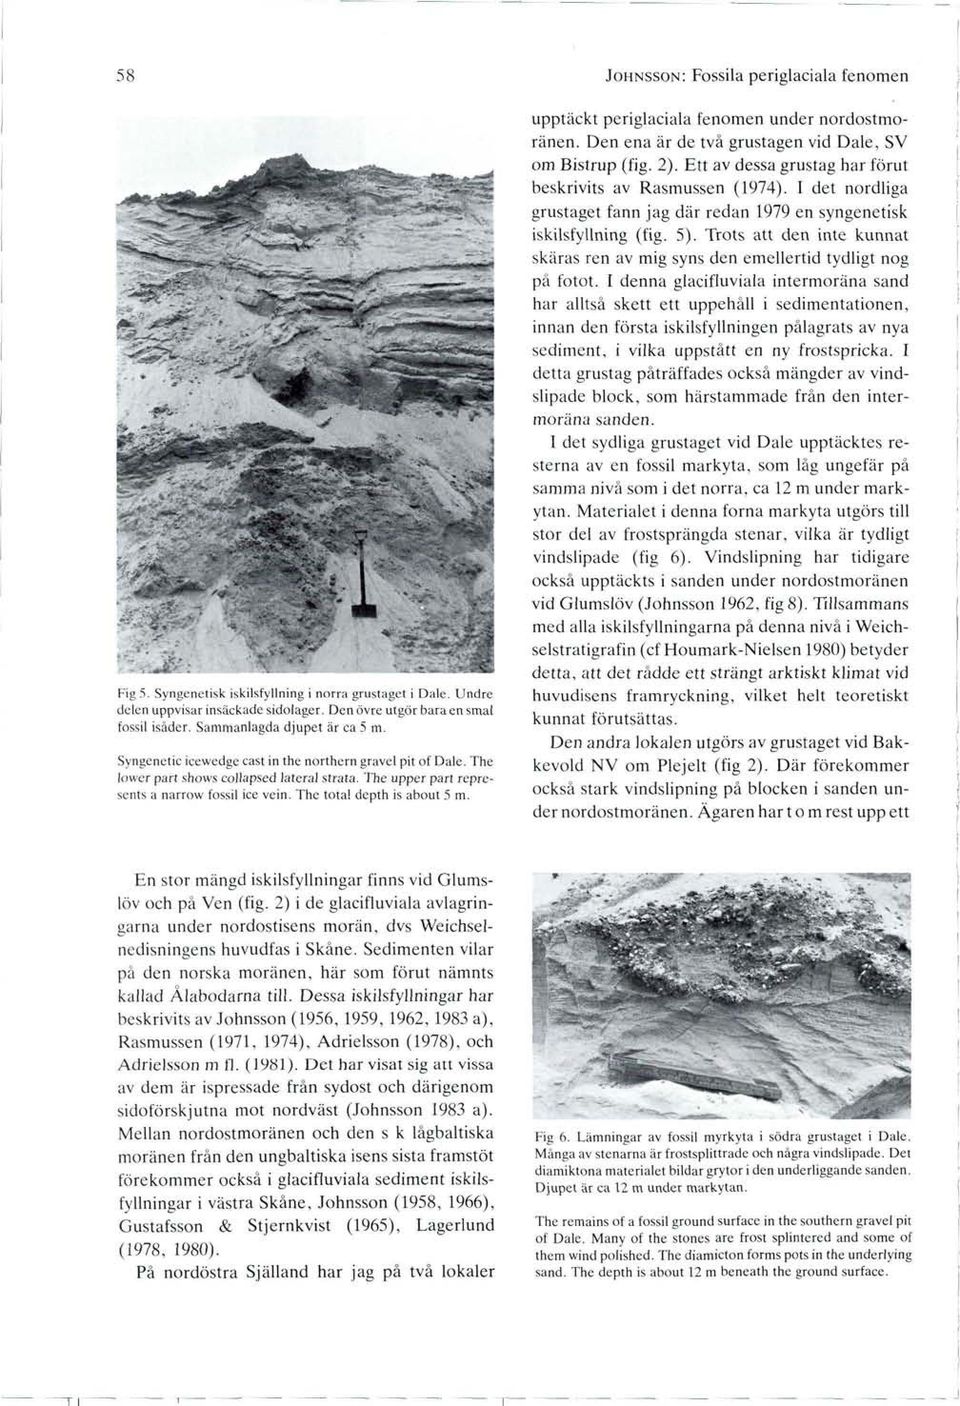 JOHNSSON: Fossila periglaciala fenomen upptåckt periglaciala fenomen under nordostmorånen. Den ena år de två grustagen vid Dale, SV om Bistrup (fig. 2).